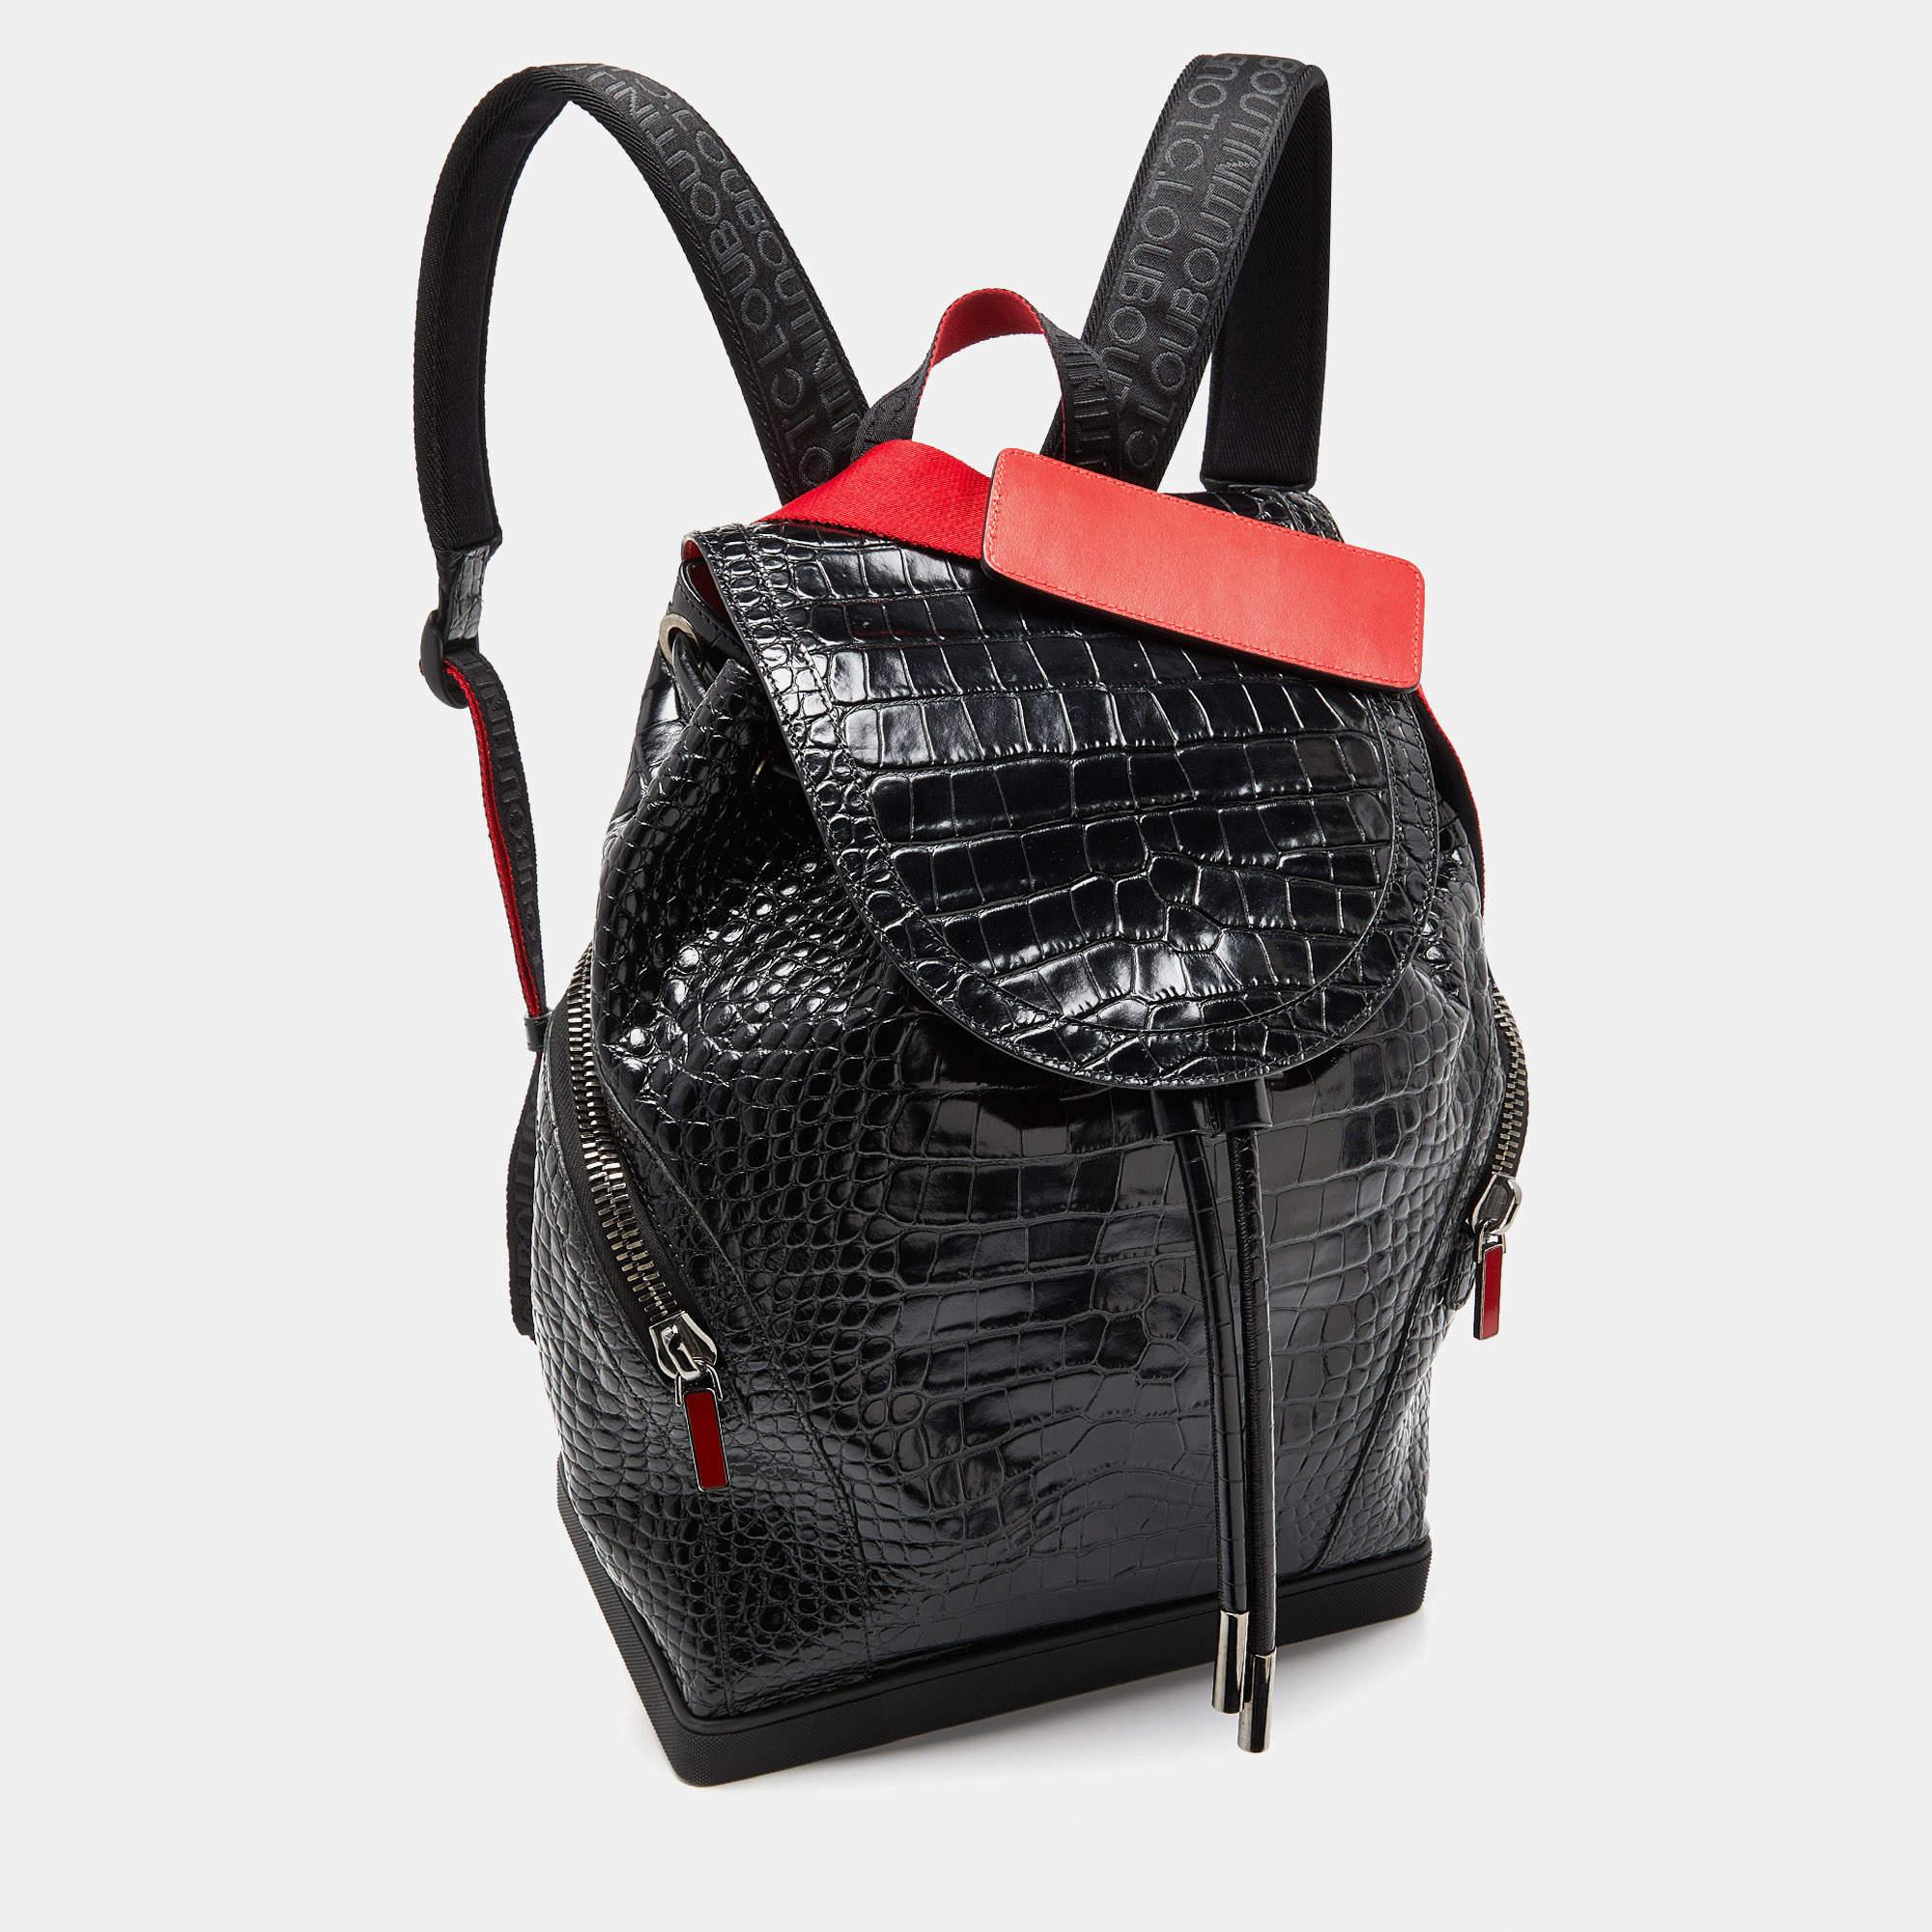 Dieser strapazierfähige und zuverlässige Designer-Rucksack besticht durch sein schlankes Design. Das Innere der Tasche ist sehr geräumig. Sie ist mit einem oberen Griff und Schulterriemen ausgestattet.

